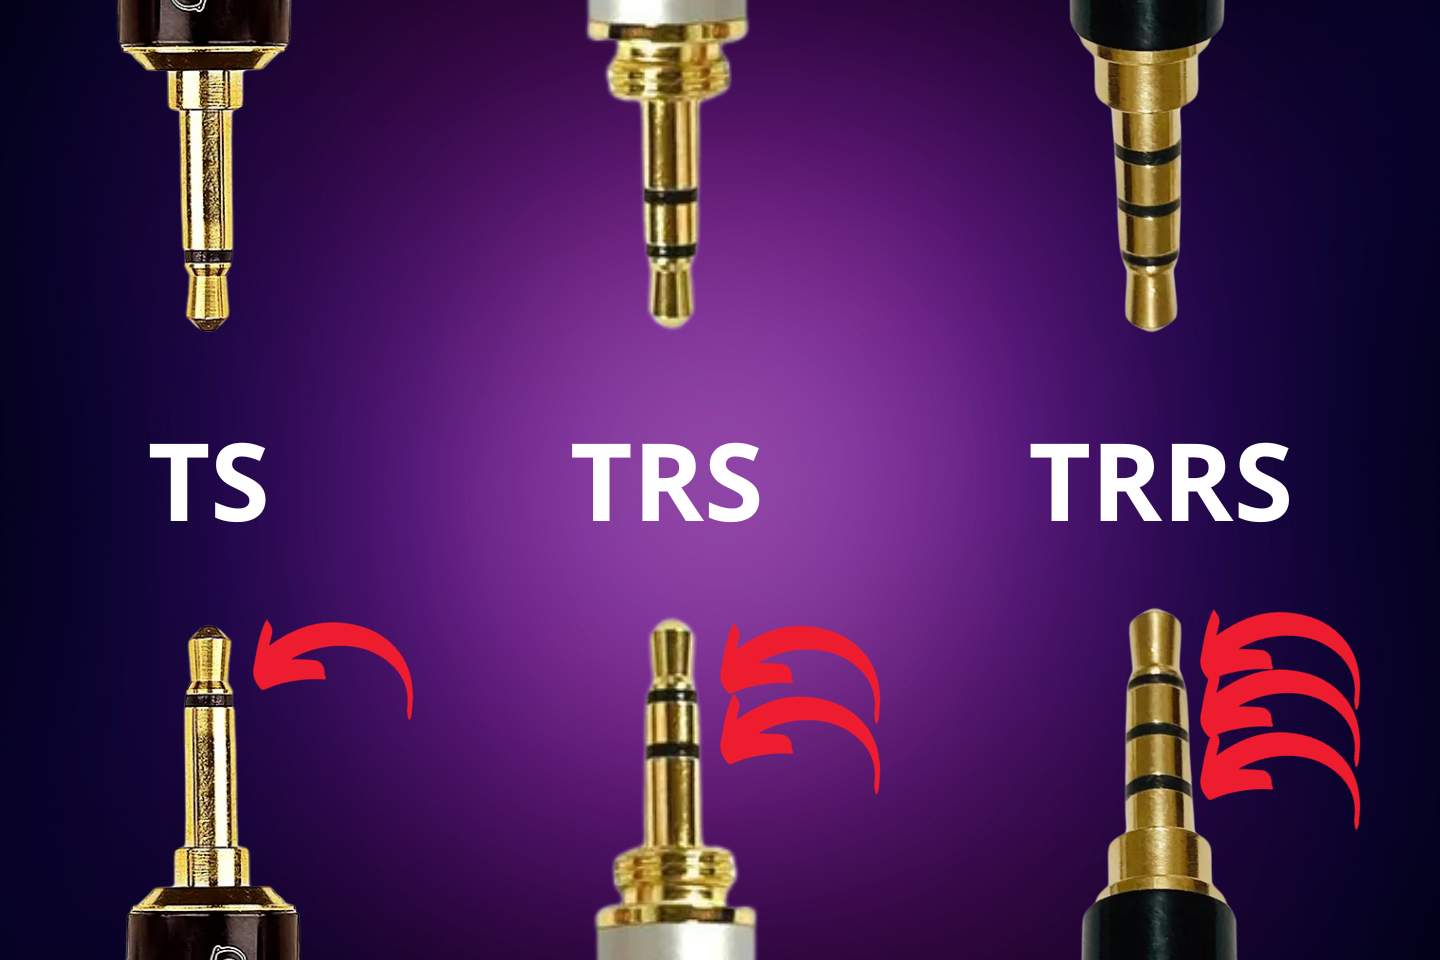 Elementos fundamentais de um conector, incluindo os tipos TS, TRS e TRRS